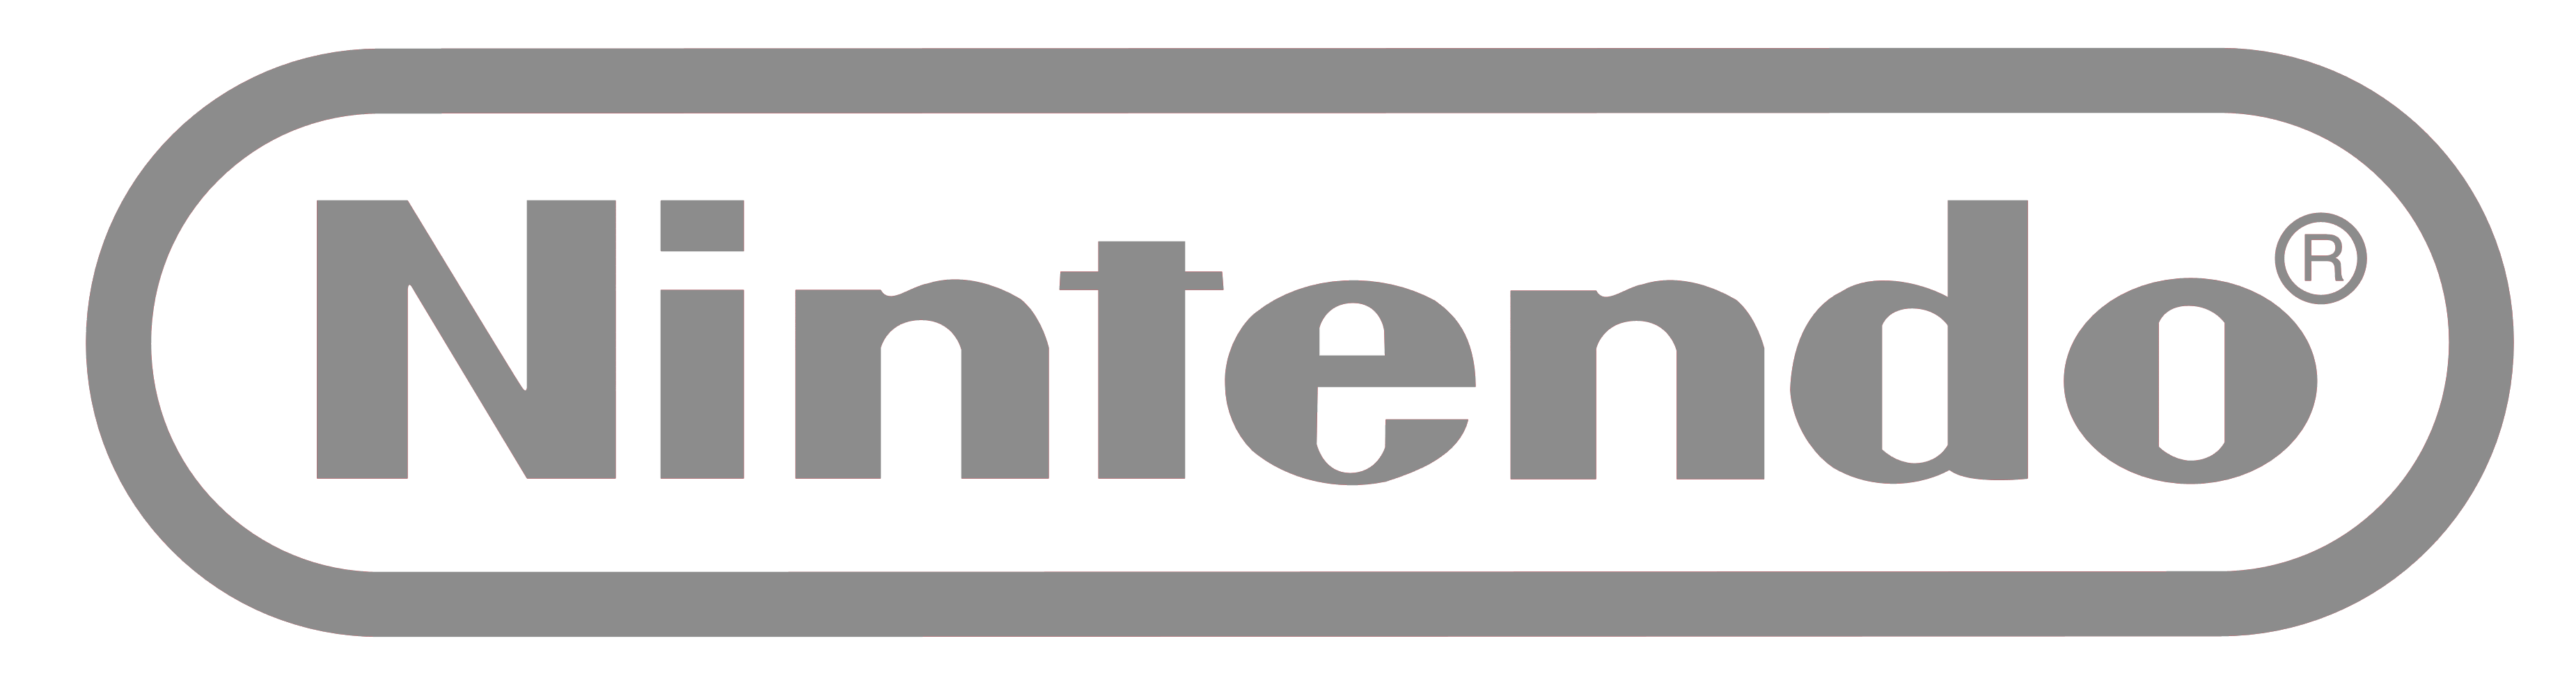 Nintendo logo, logotype